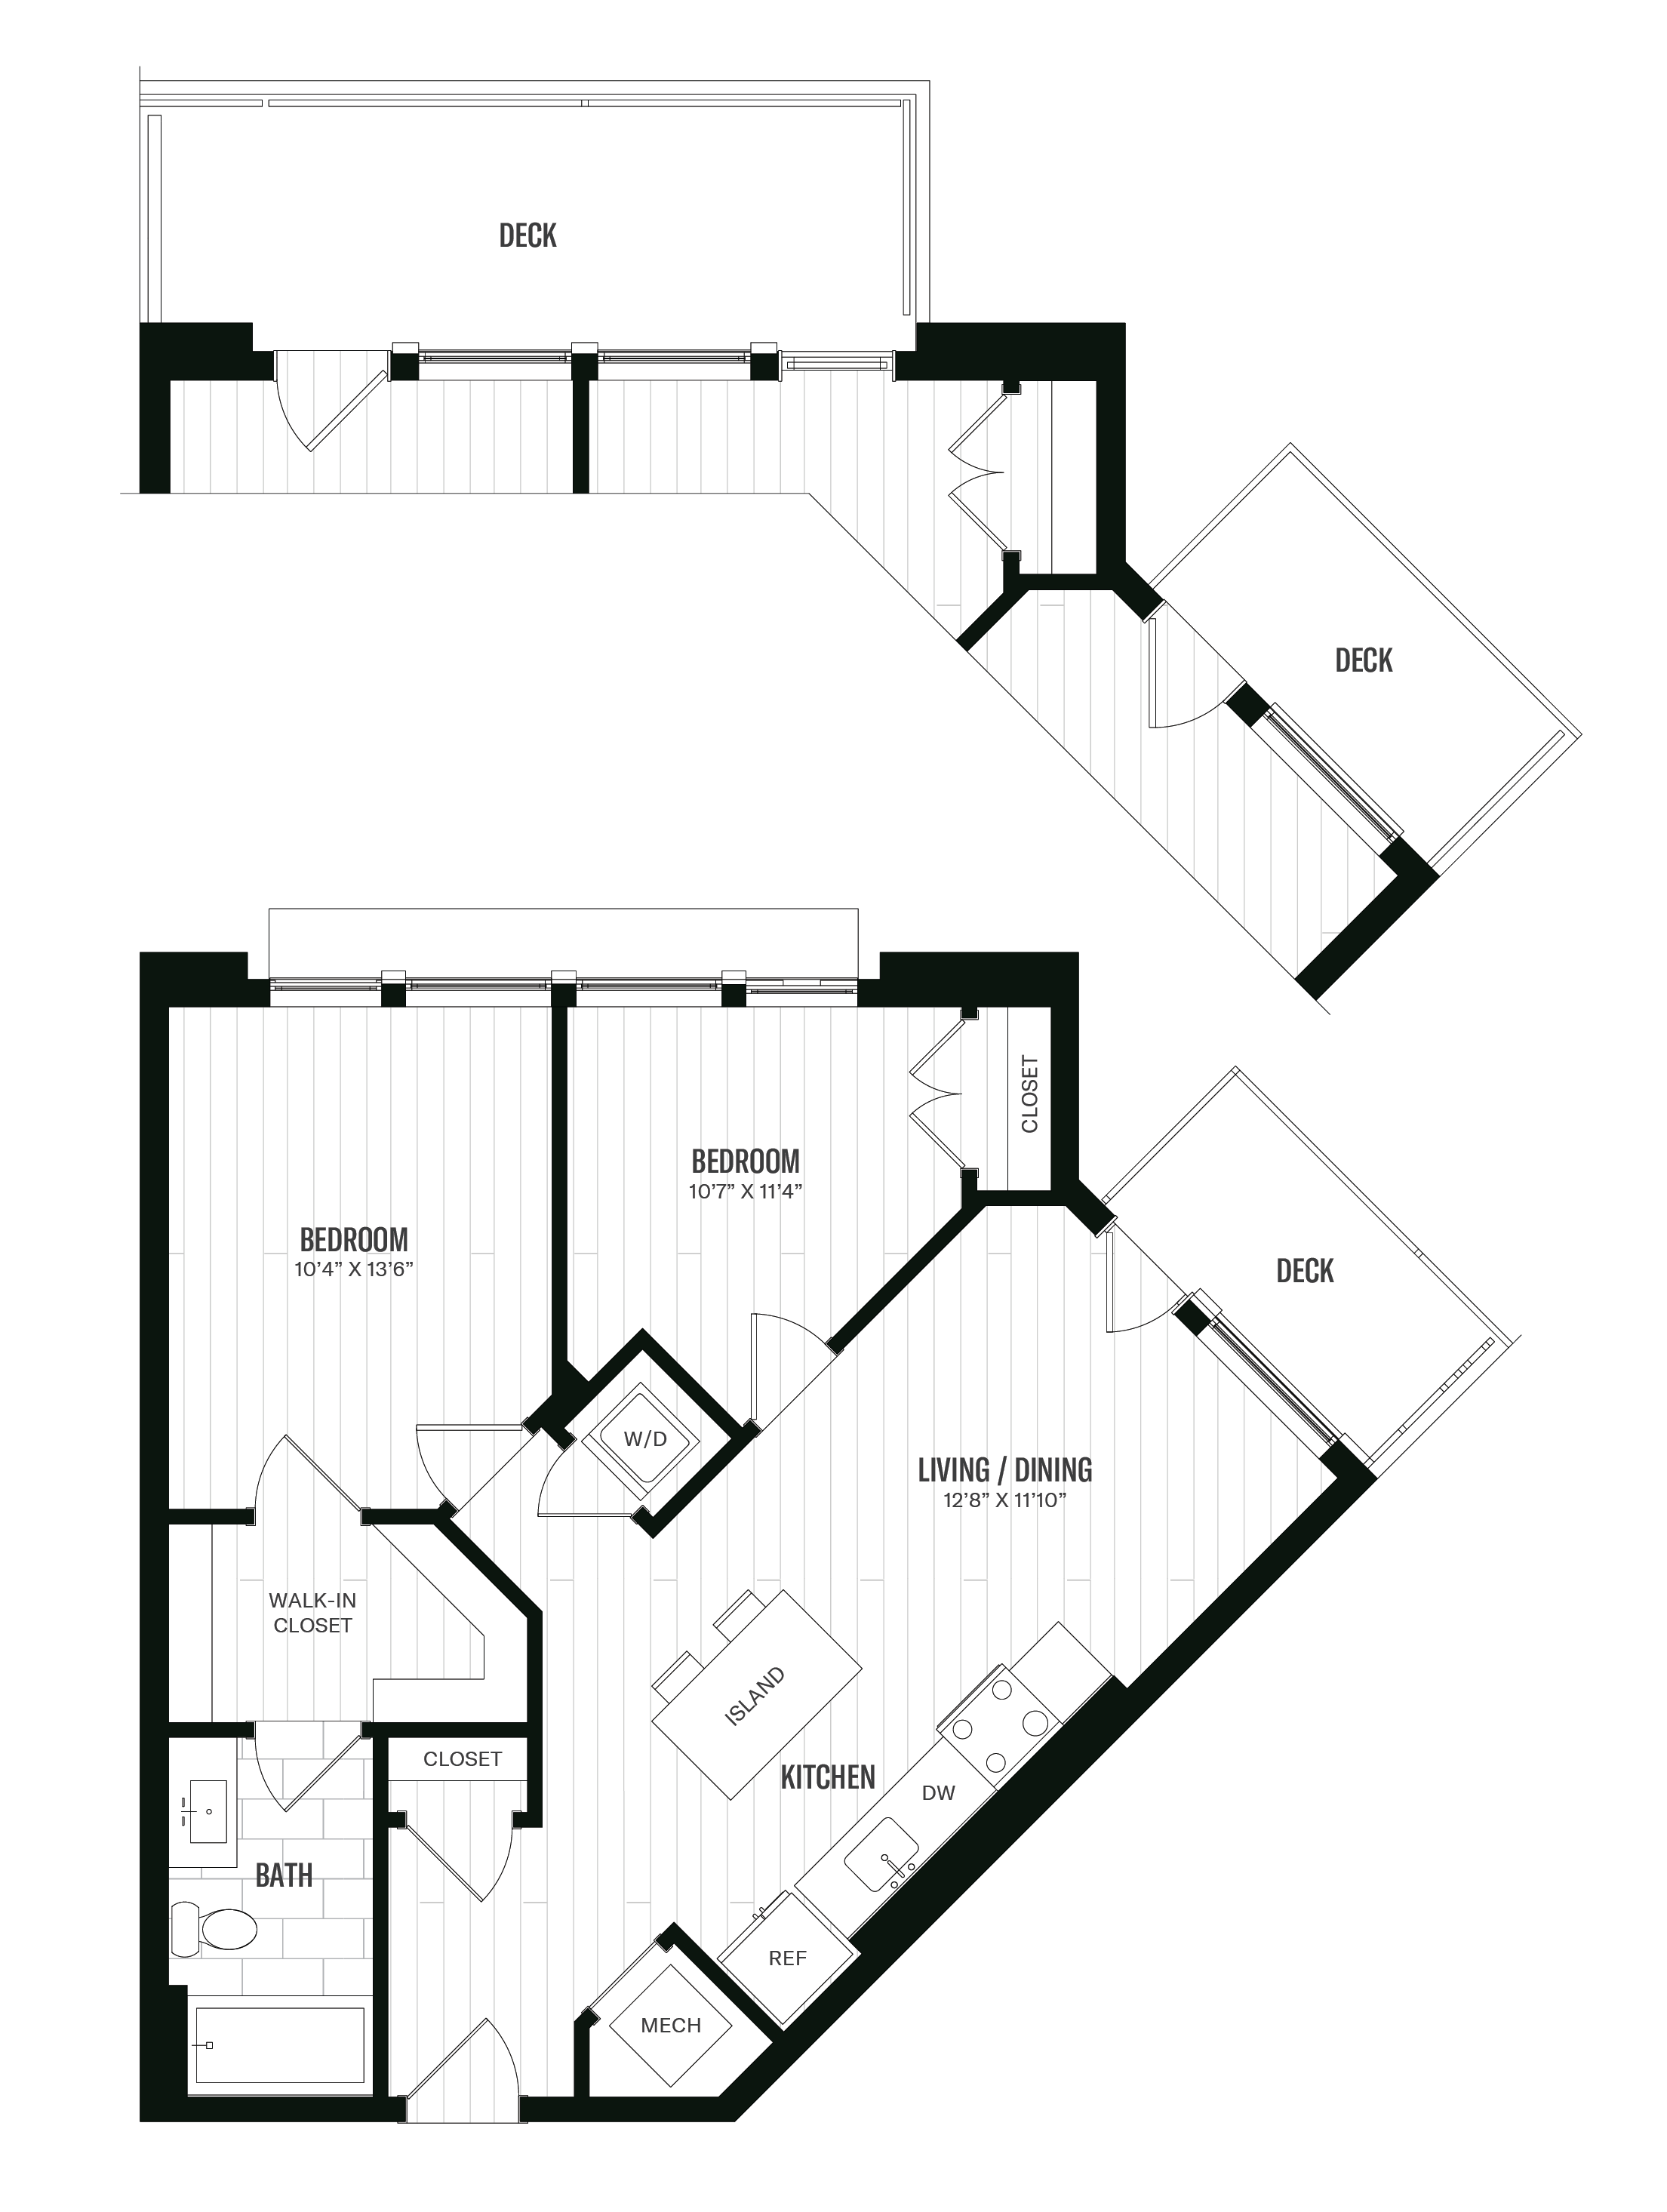 Floorplan image of unit 216